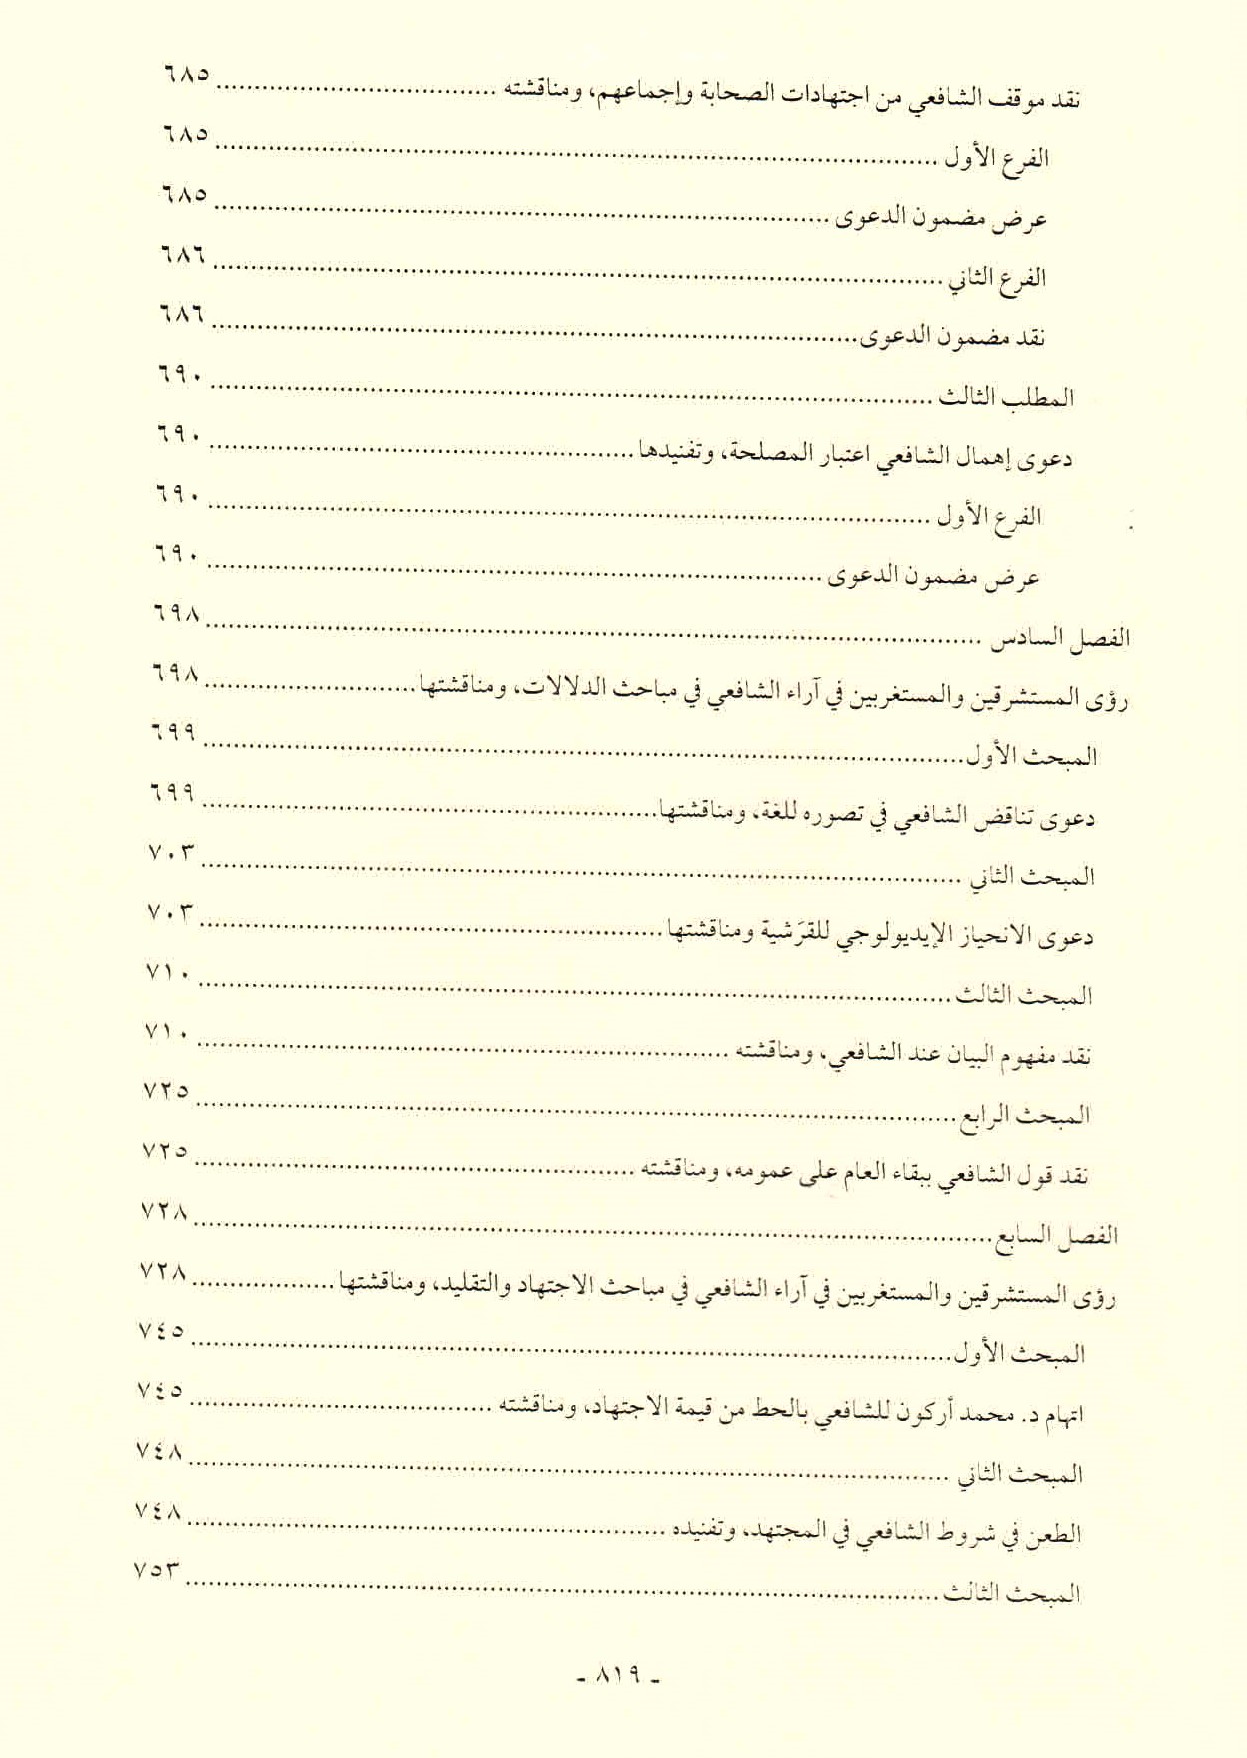 قائمة محتويات كتاب افتراءات المستشرقين والحداثيين على أصول الشريعة وأئمتها للدكتور هاني محمود ص. 819